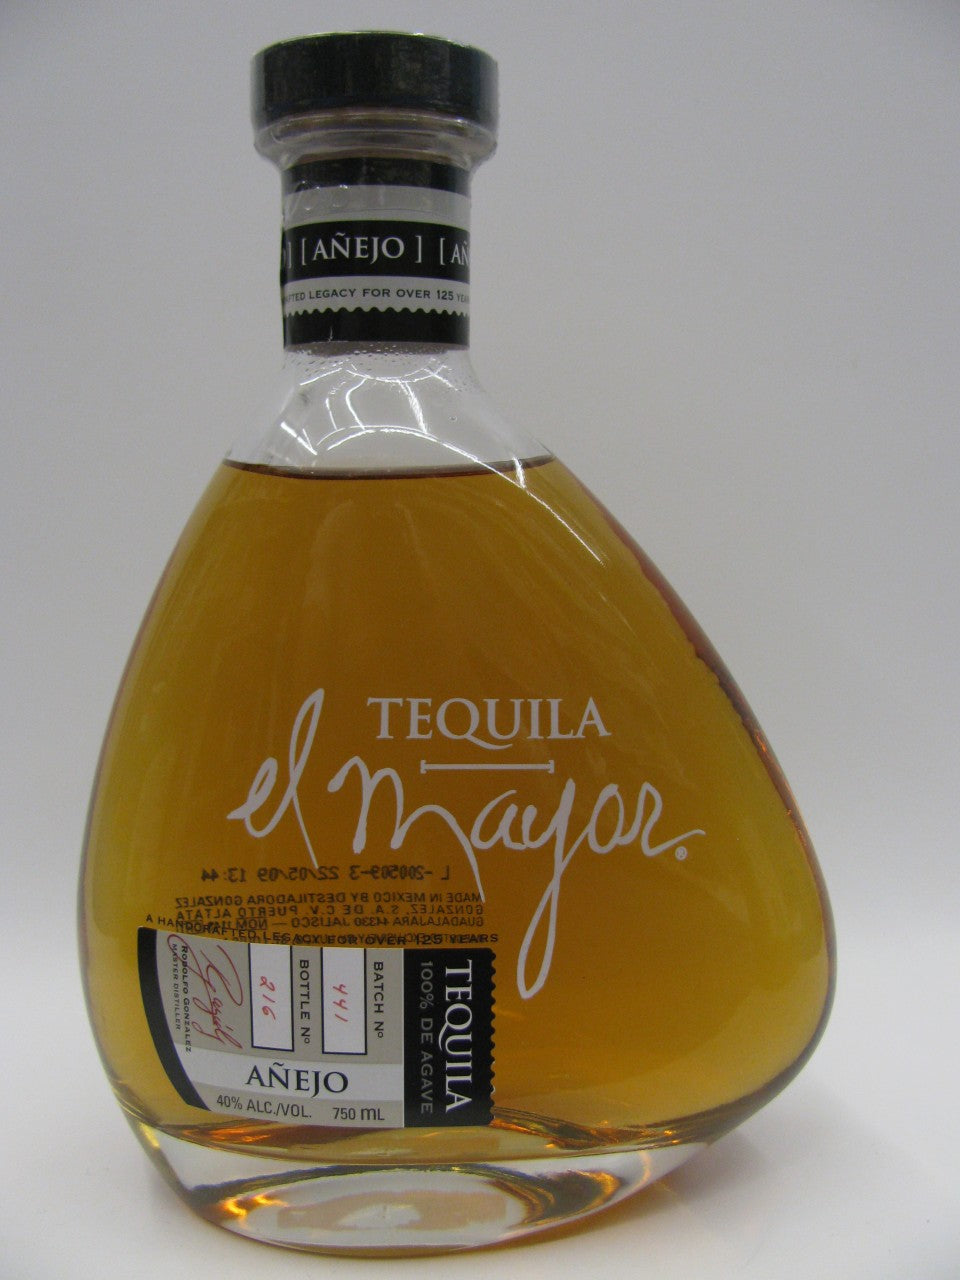 El Mayor Añejo Tequila - El Mayor